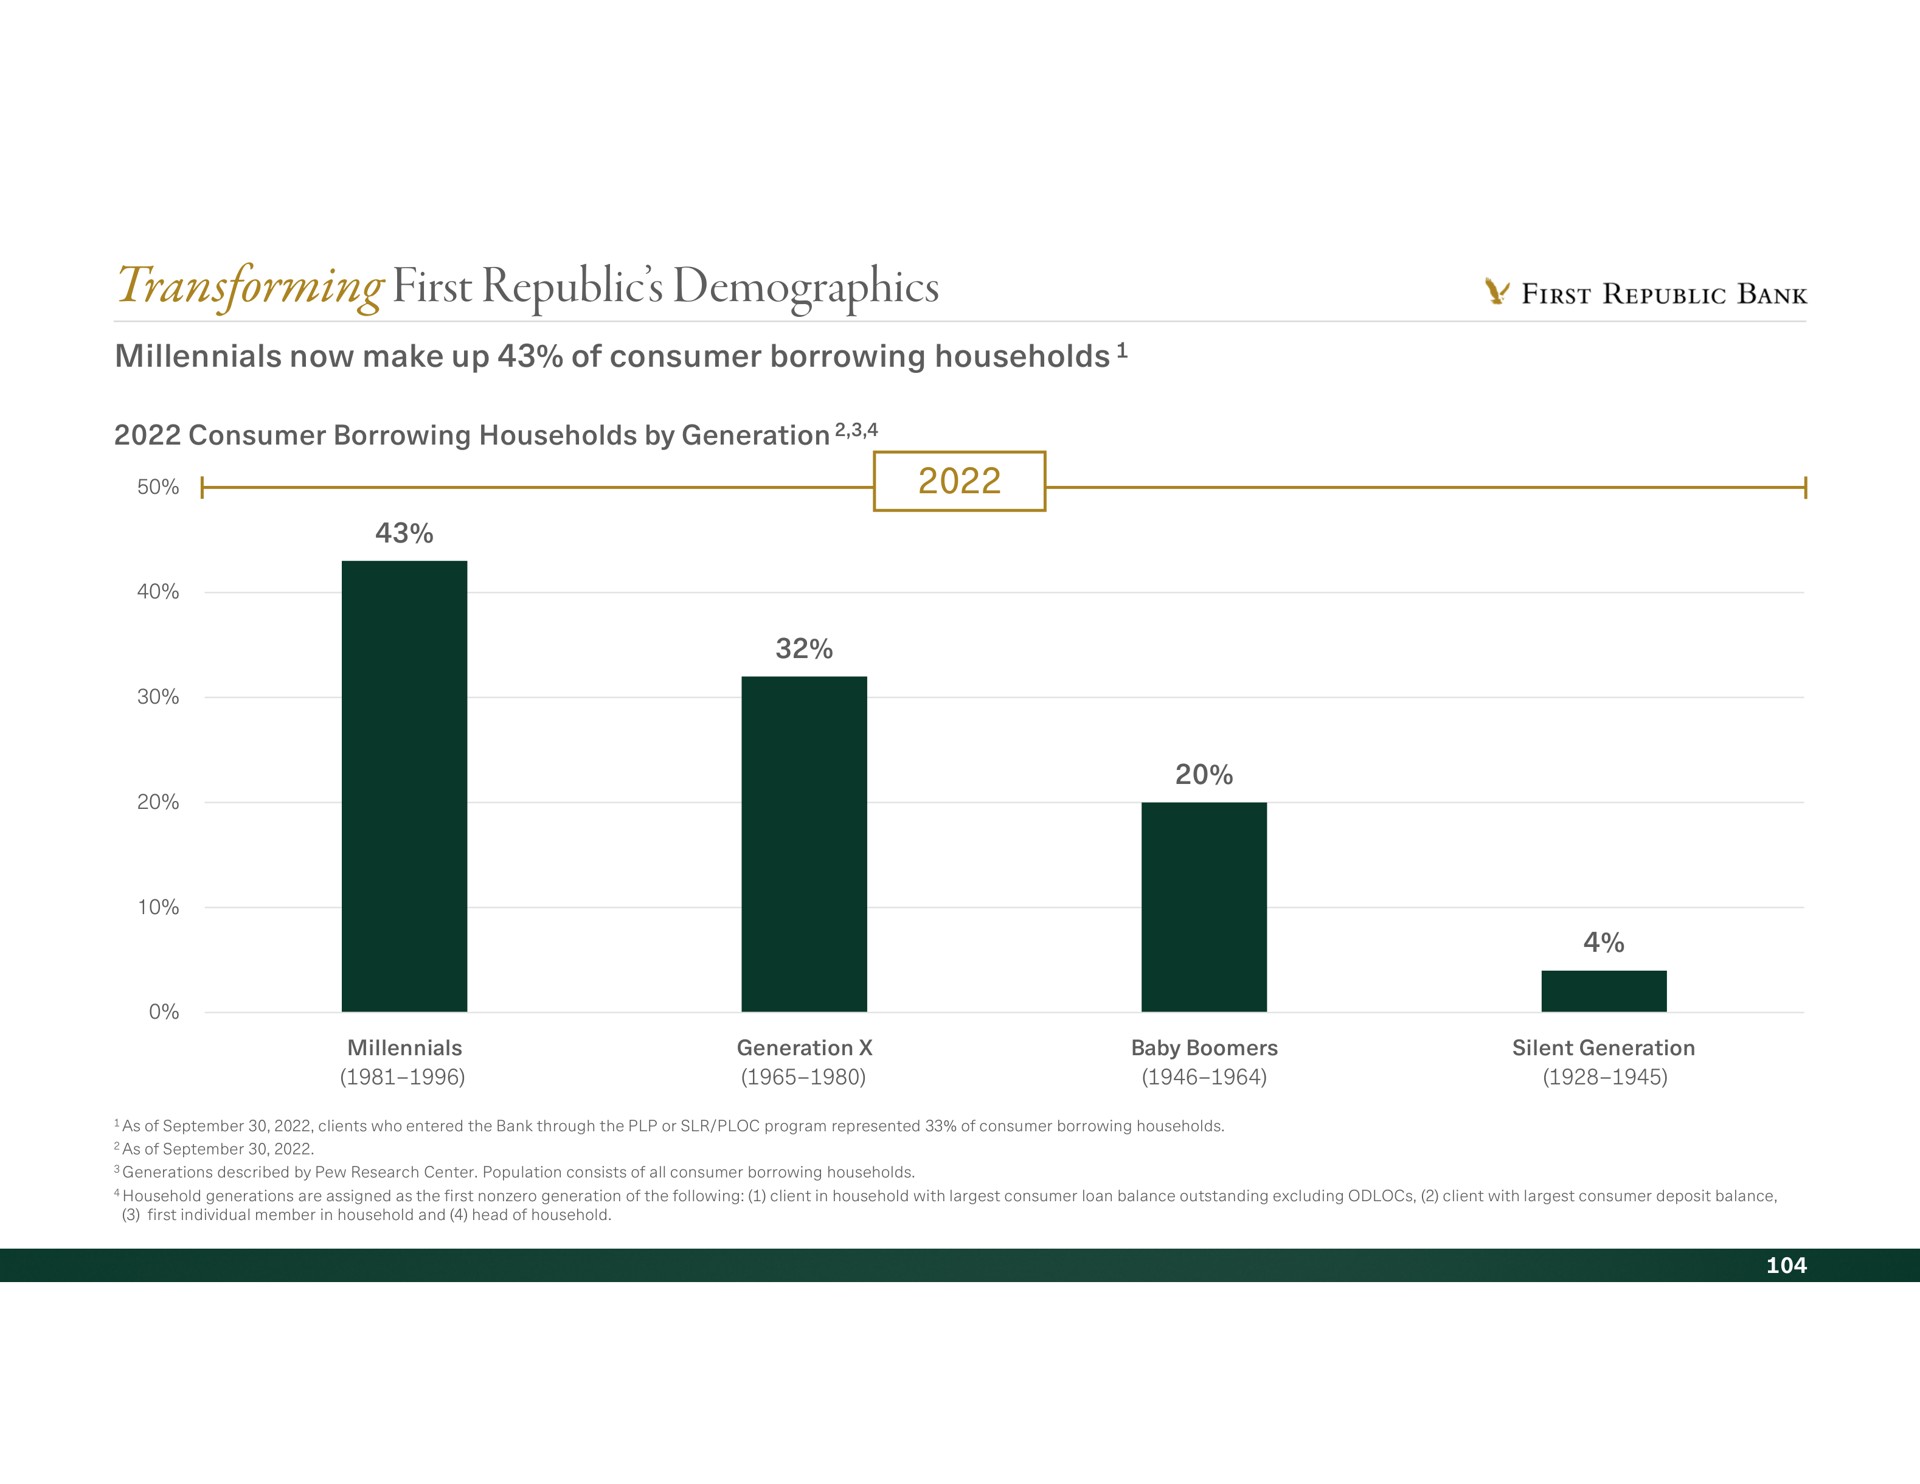 transforming first republic demographics republics bank | First Republic Bank